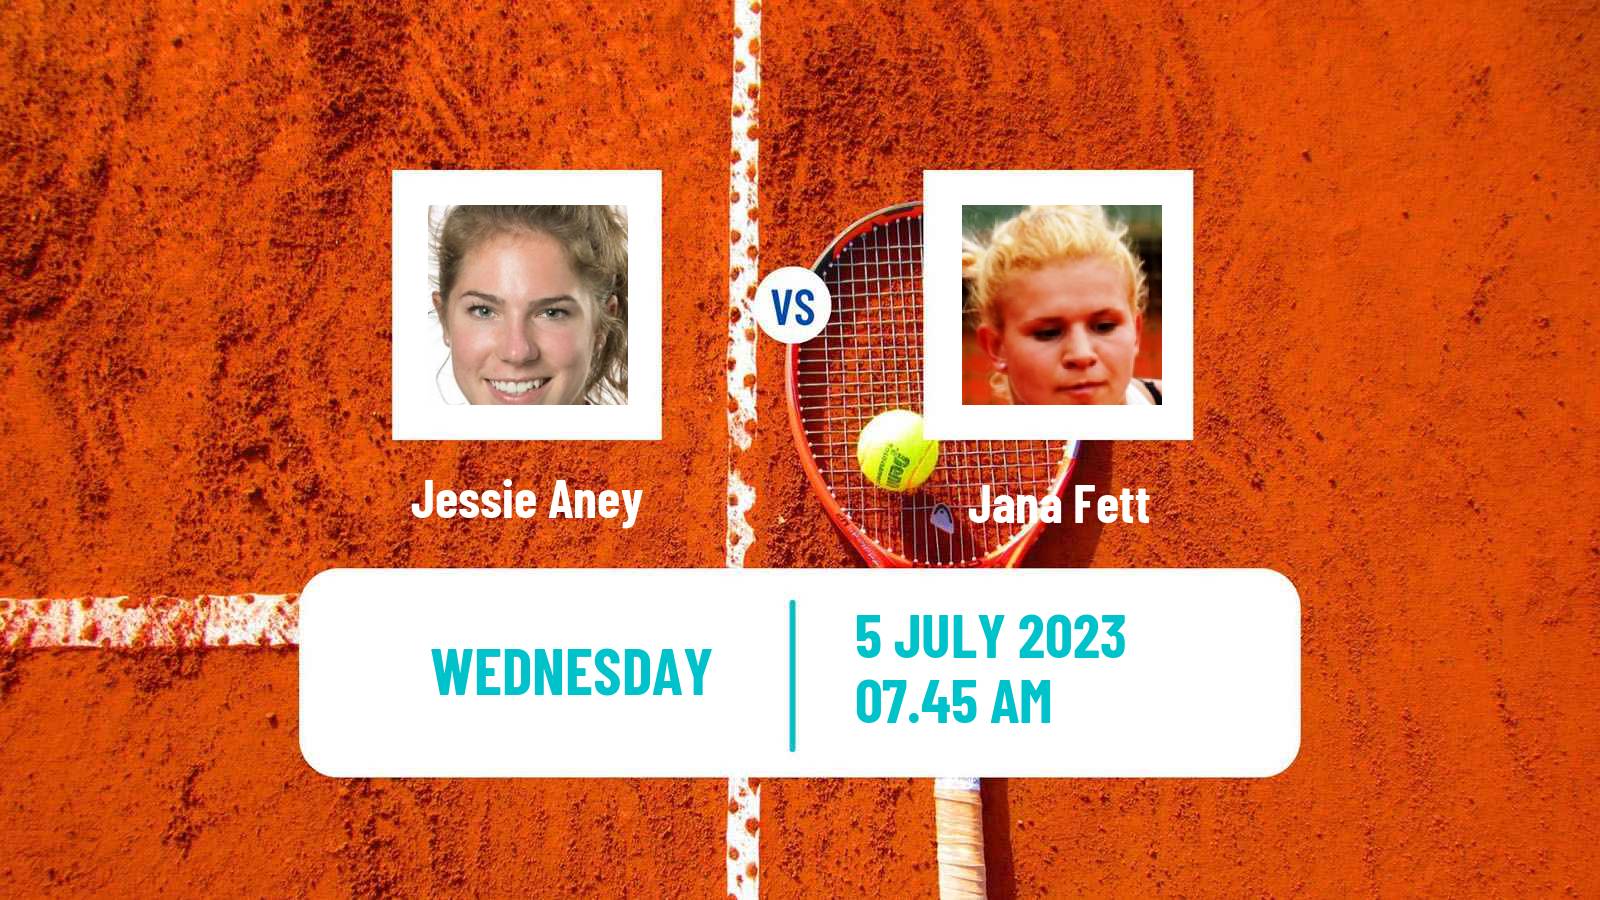 Tennis ITF W60 Liepaja Women Jessie Aney - Jana Fett